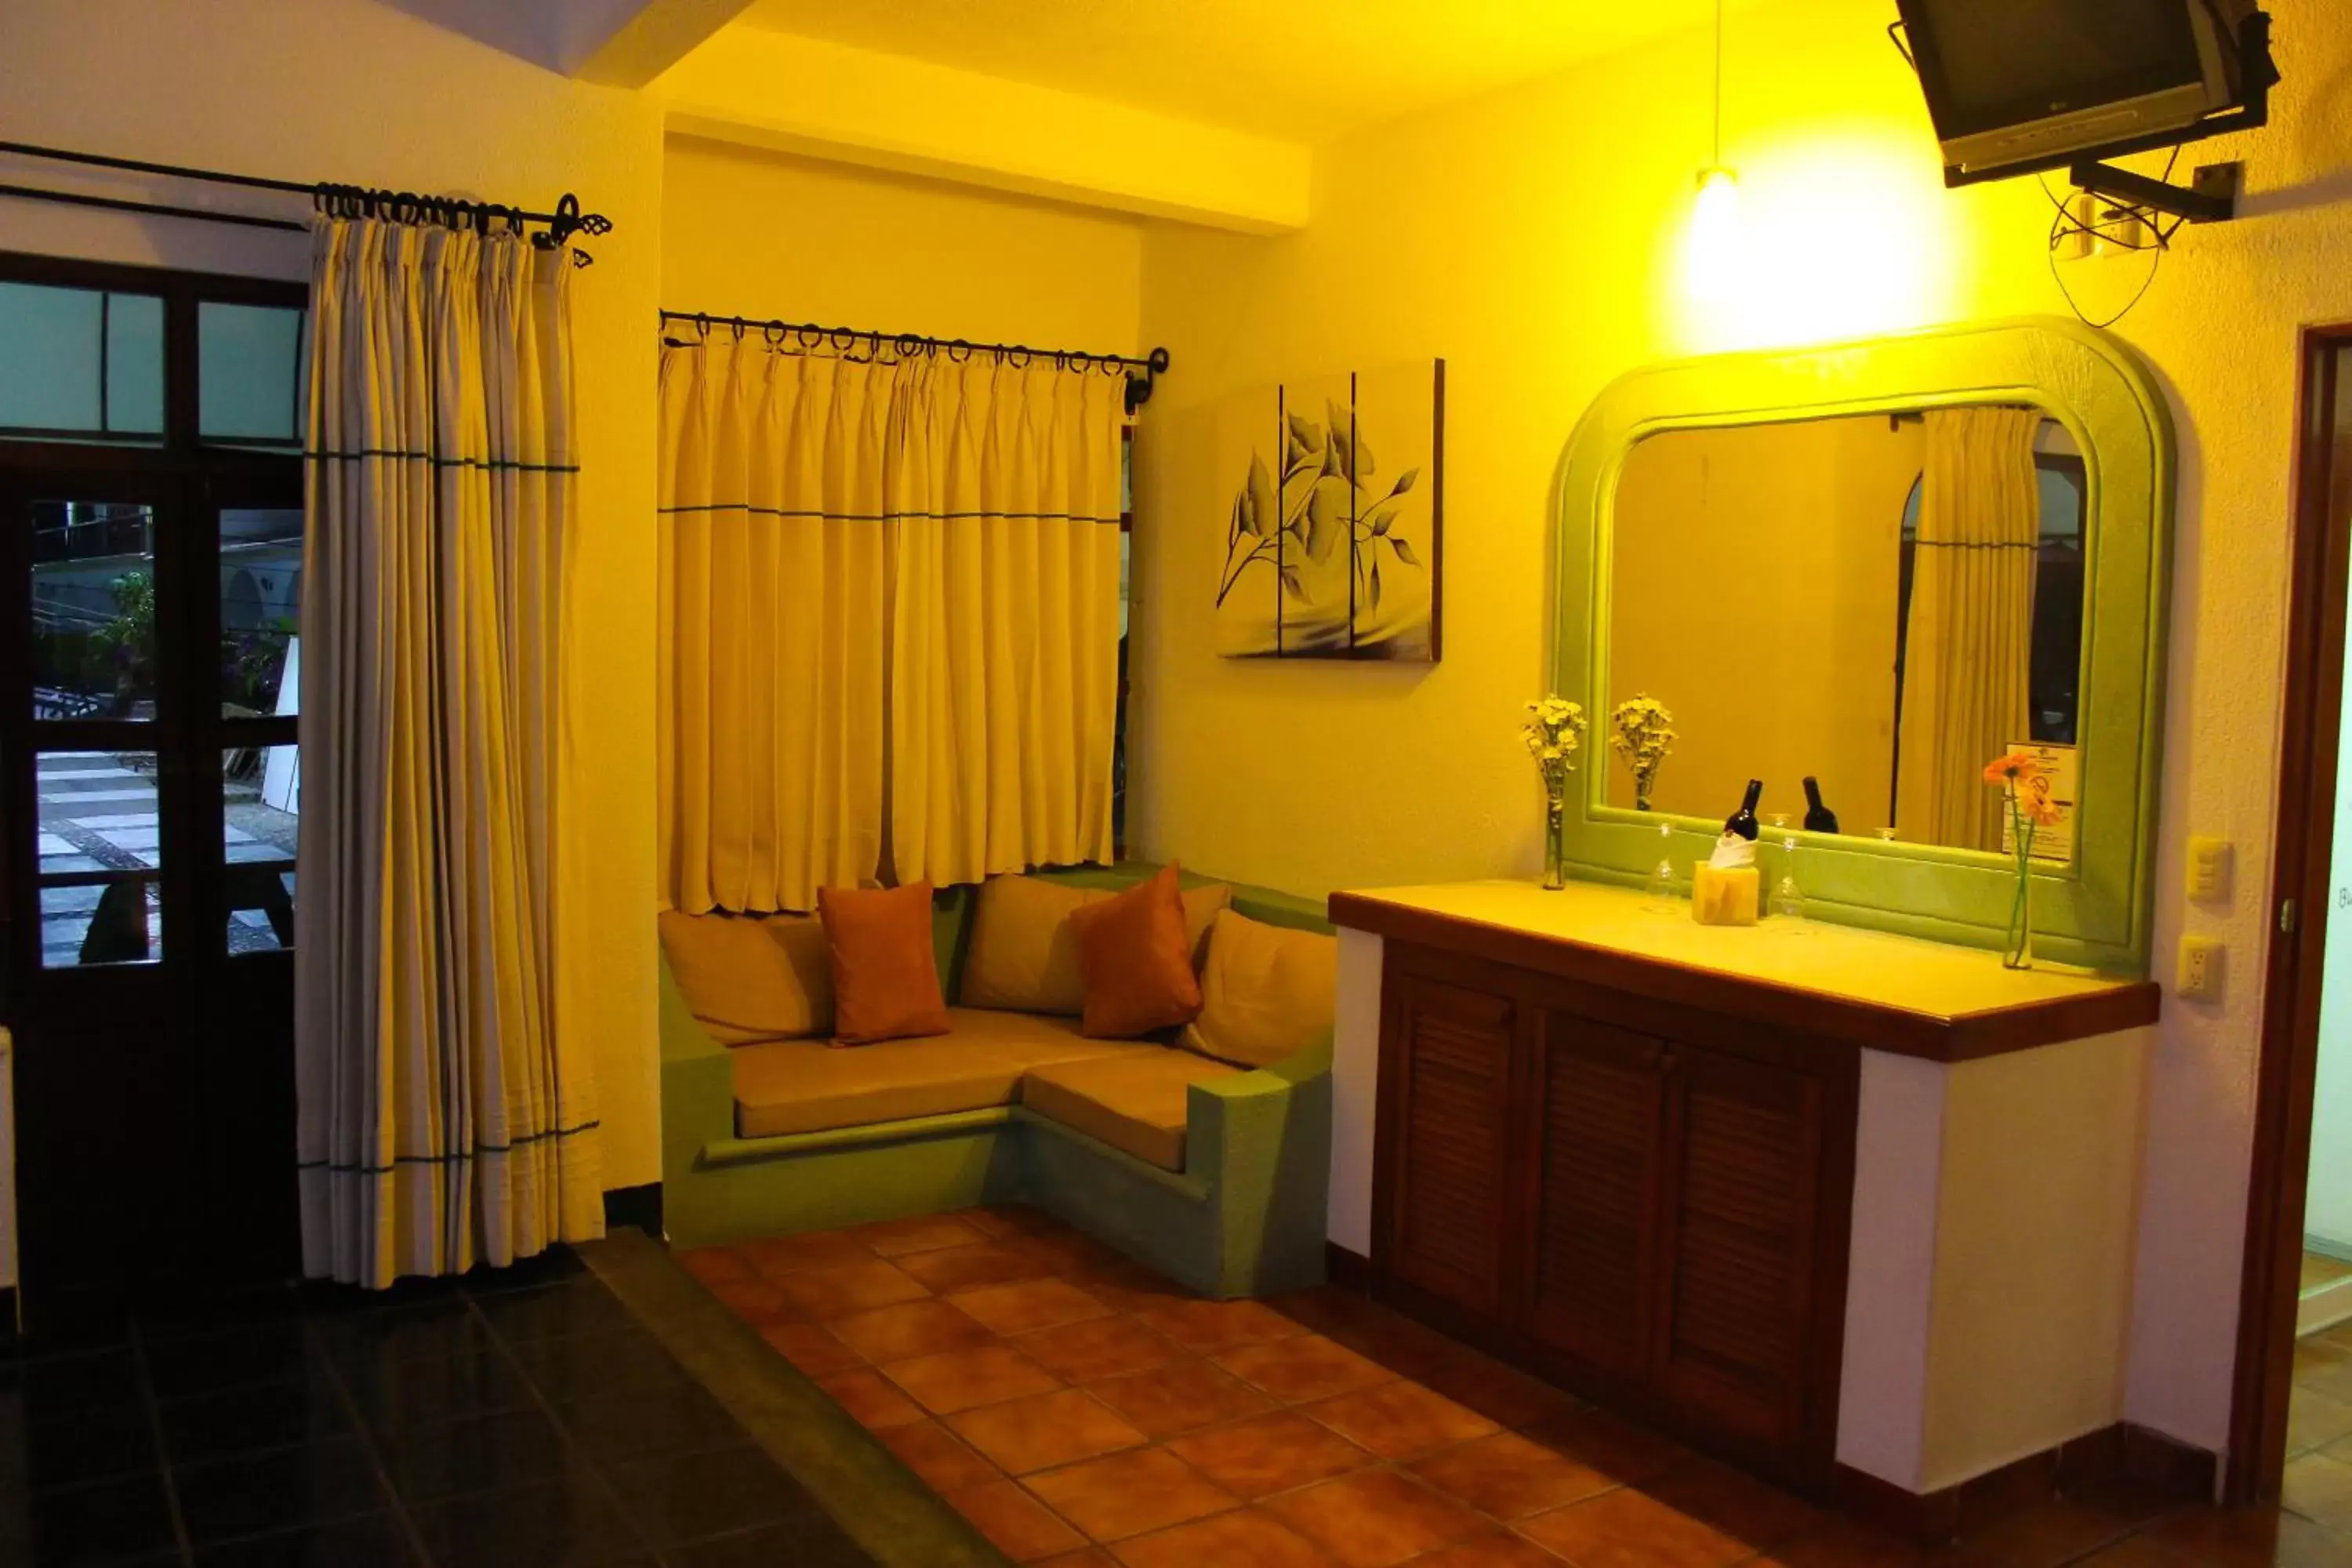 Area and facilities, Bathroom in Hotel Careyes Puerto Escondido